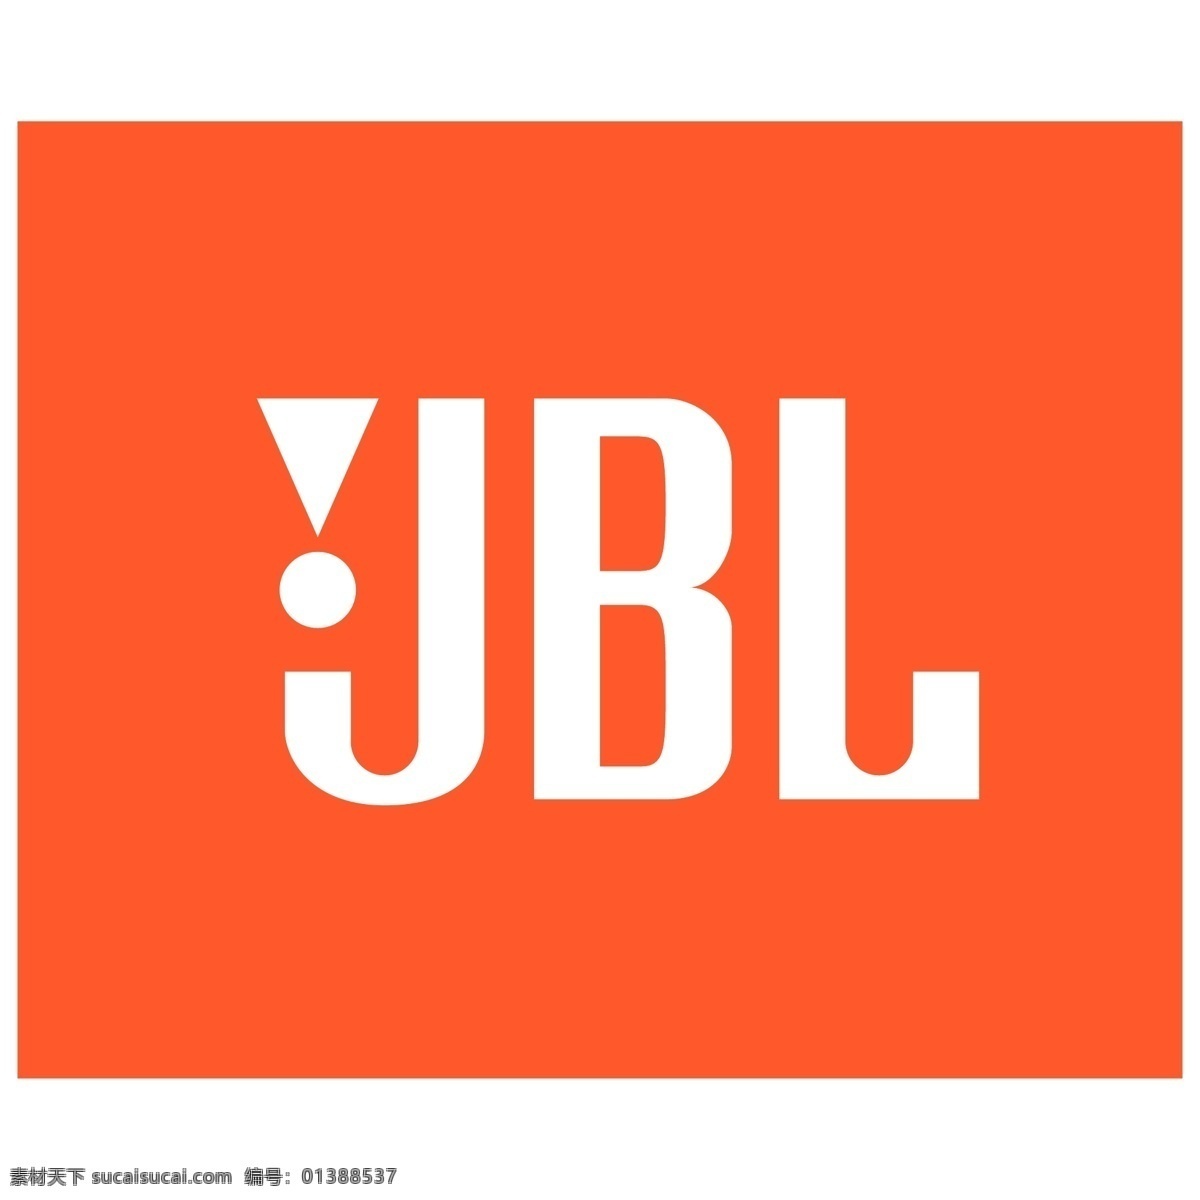 jbl 标志 模板 设计稿 矢量素材 素材元素 源文件 矢量图